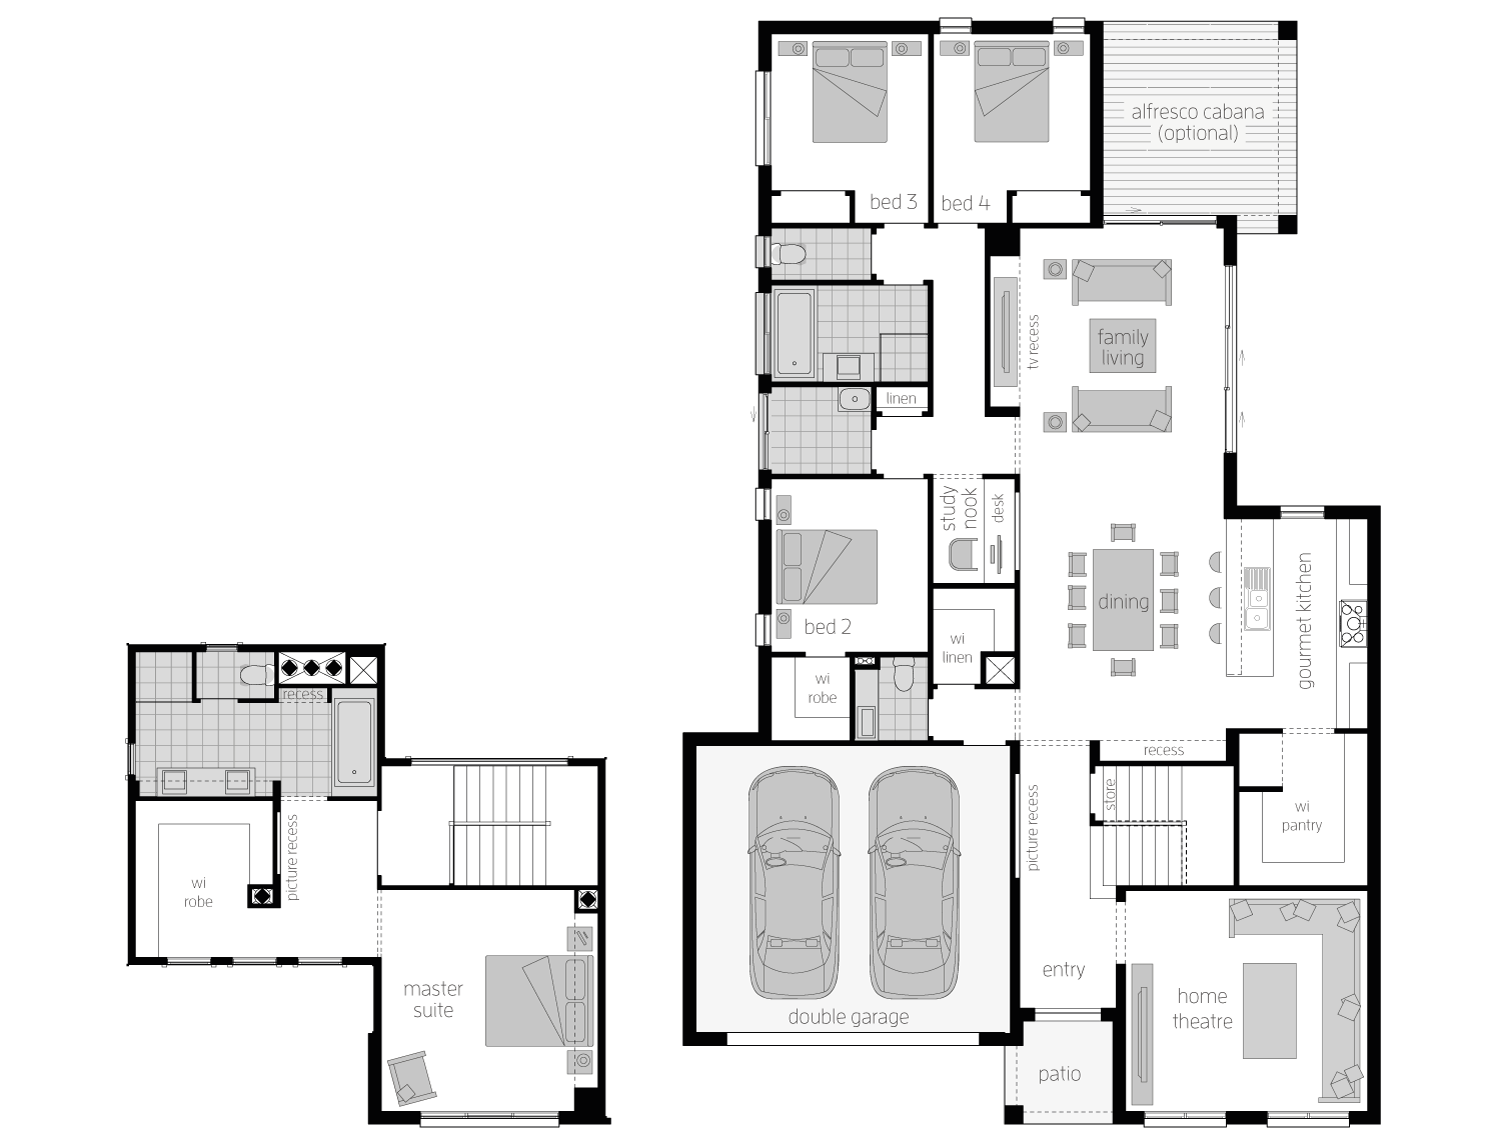 Floor Plan - Ellerston31 - Two Storey Home - McDonald Jones